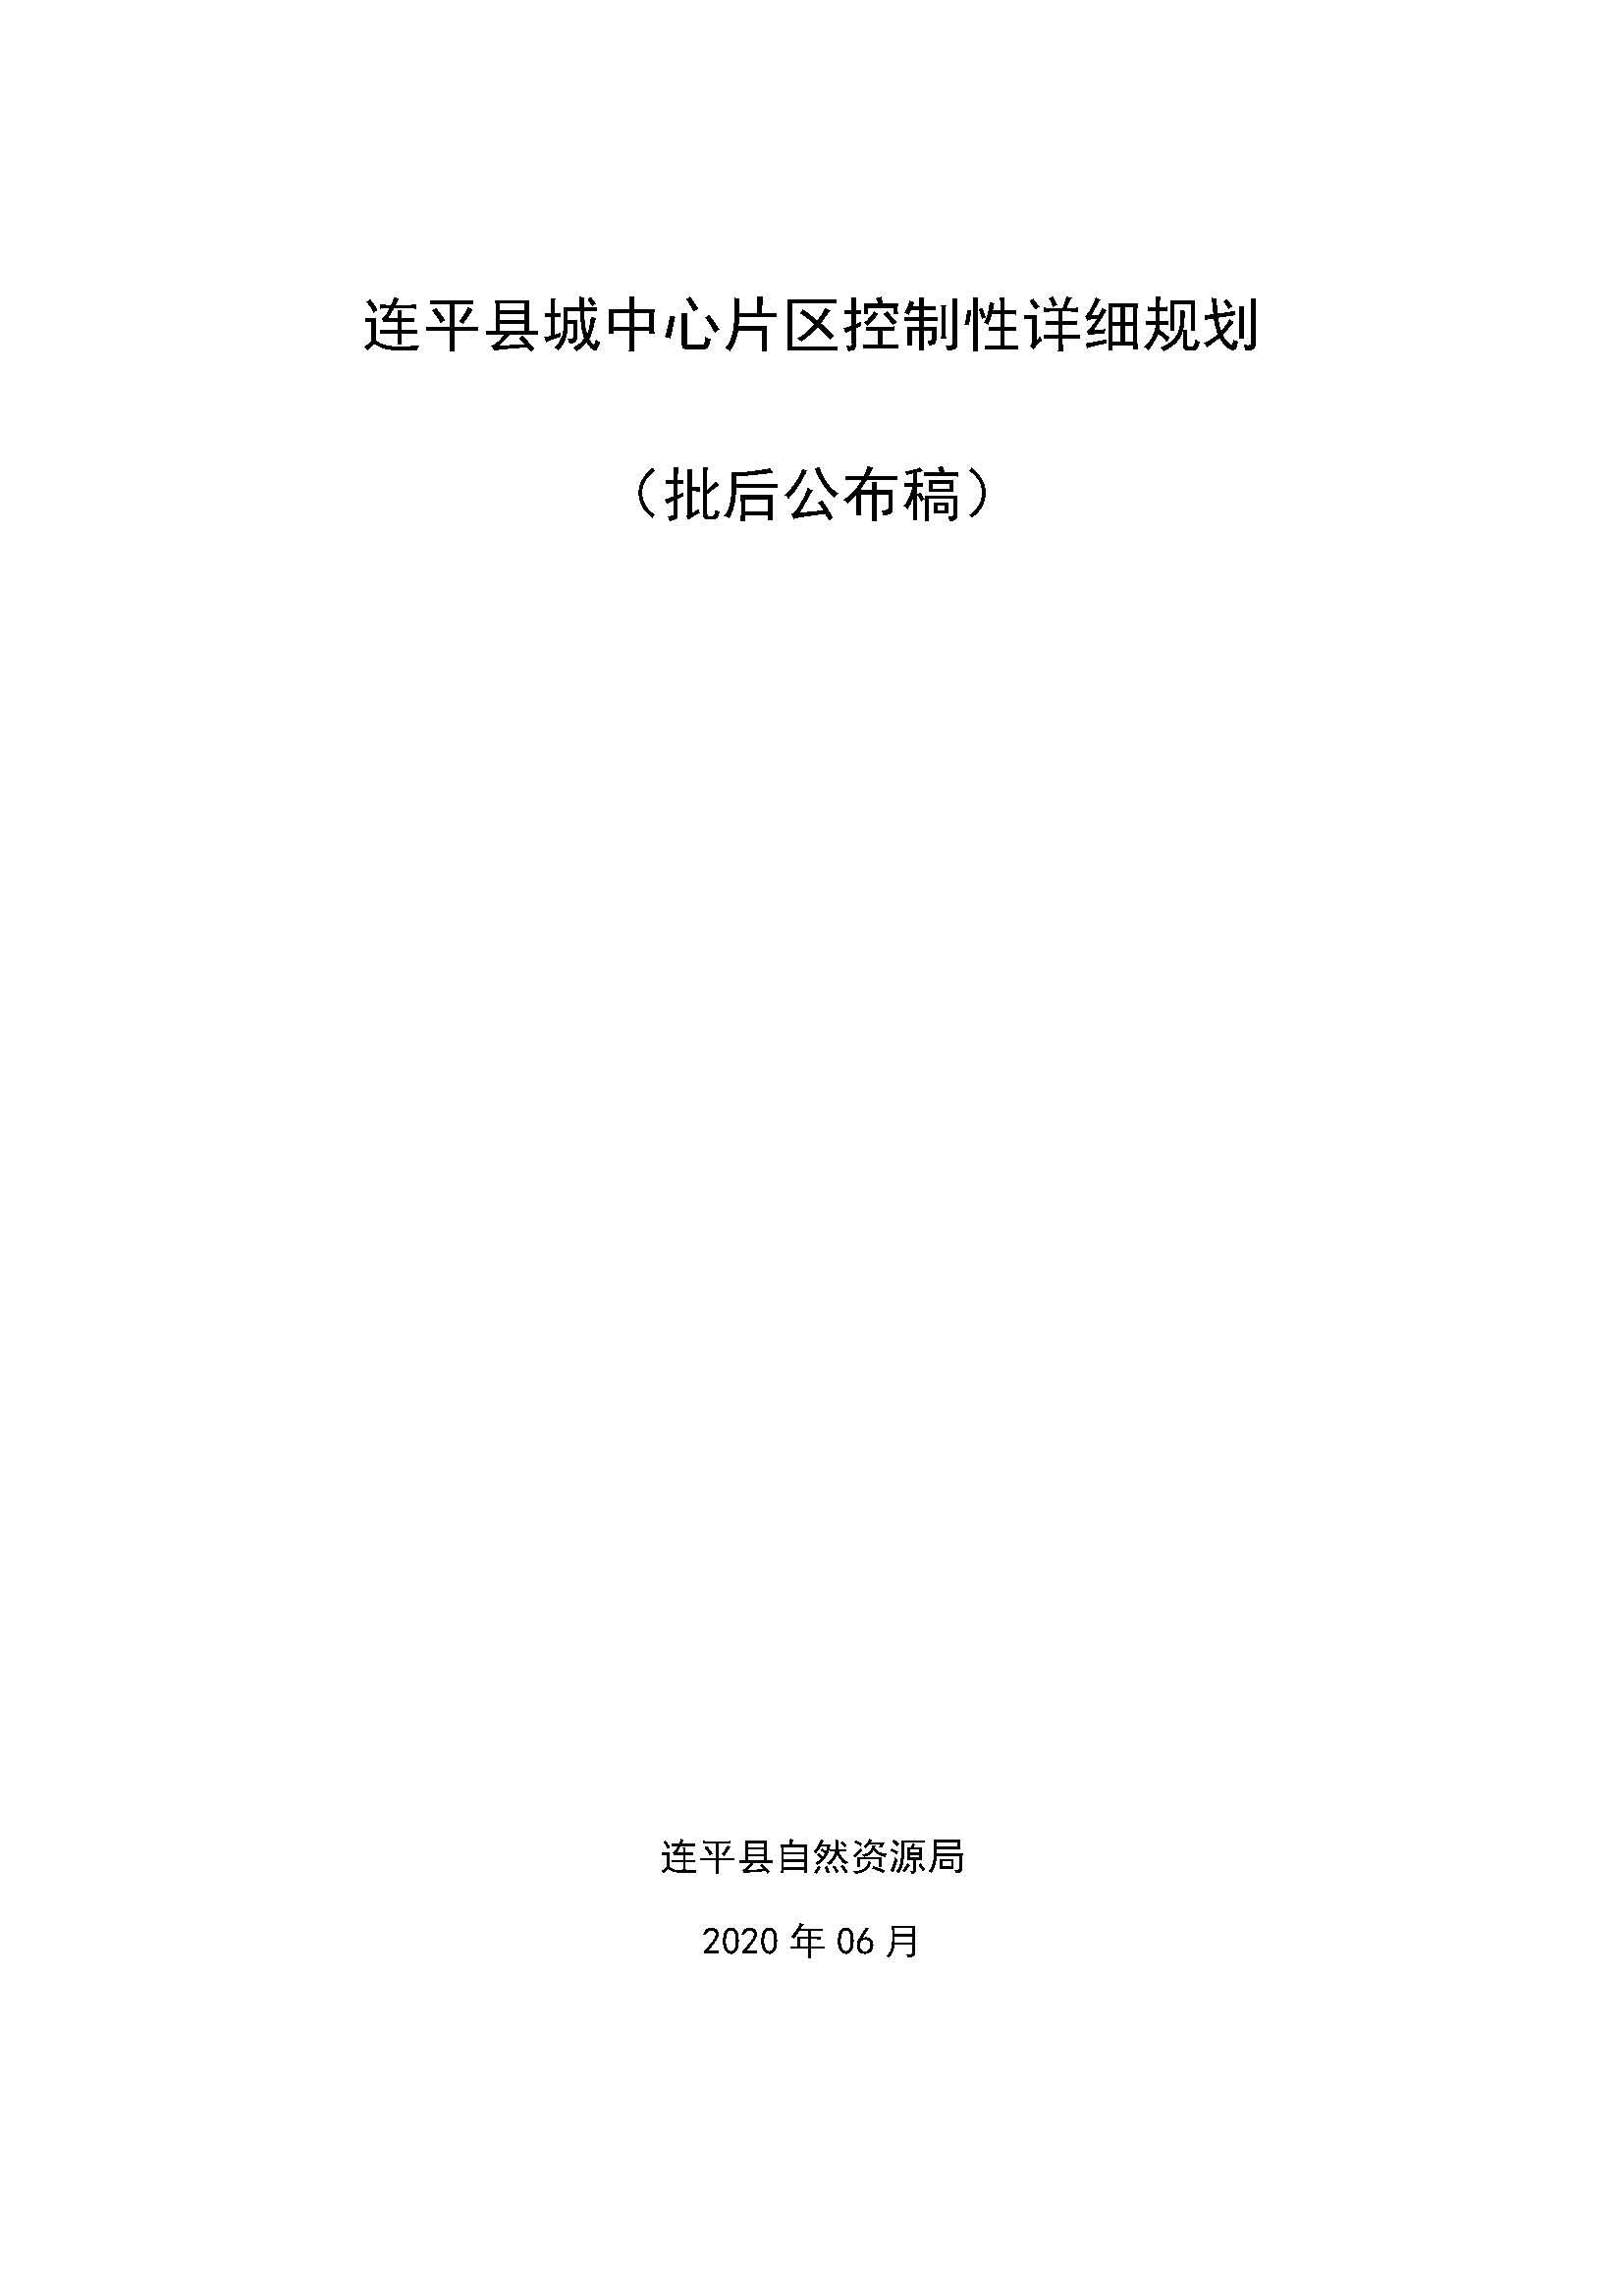 连平县城中心片区控制性详细规划（批后公布稿）20200612_页面_1.jpg